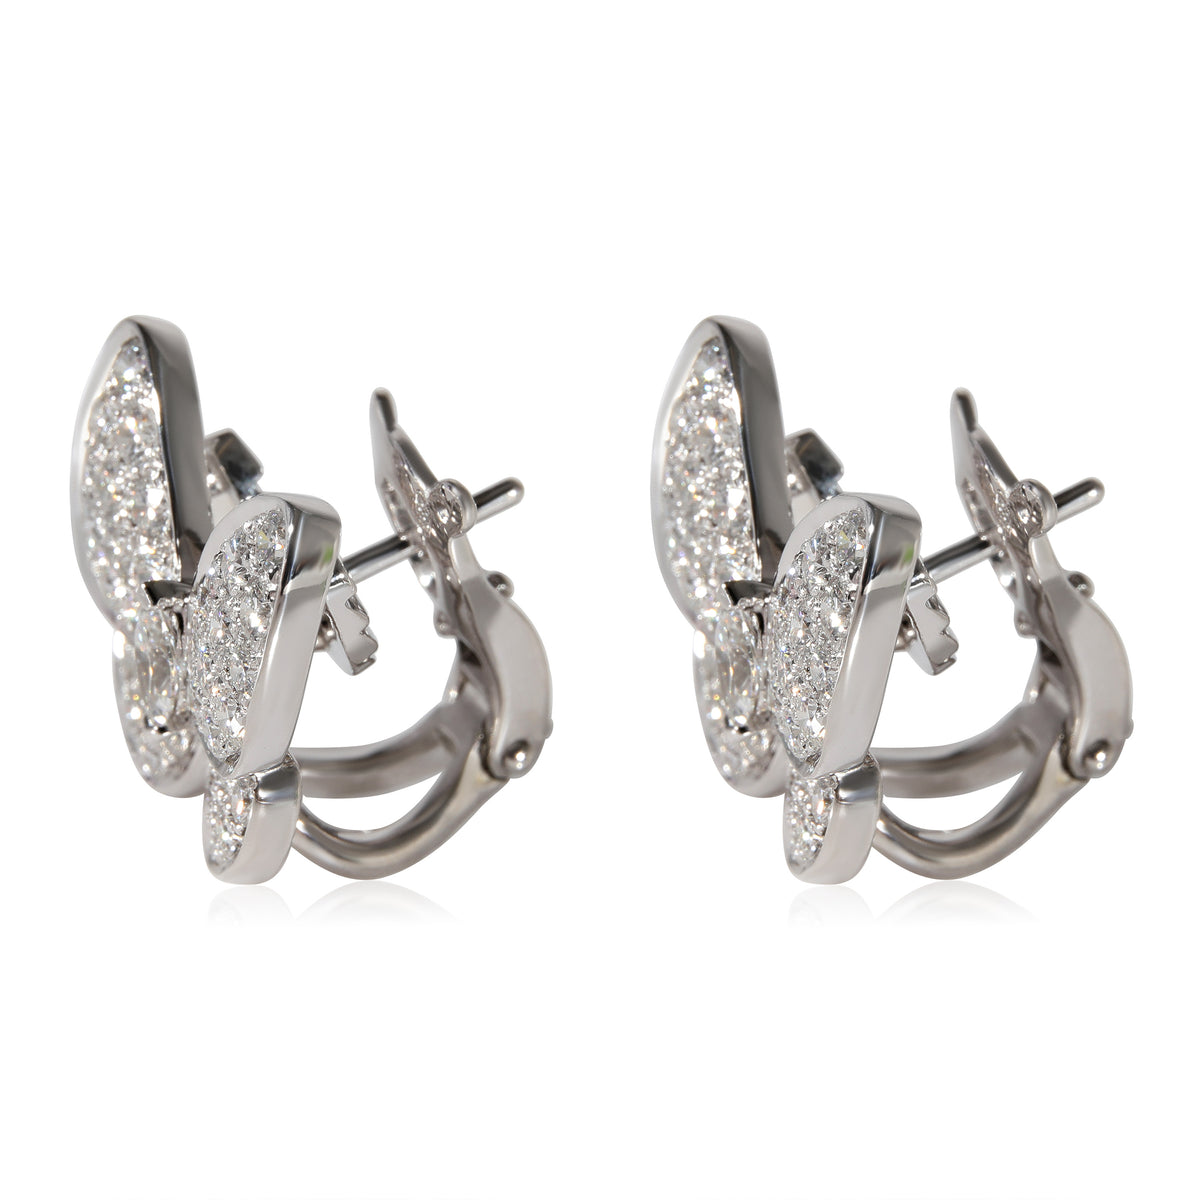 Van Cleef & Arpels Two Butterfly Diamond Earrings in 18k White Gold 1.67 CTW